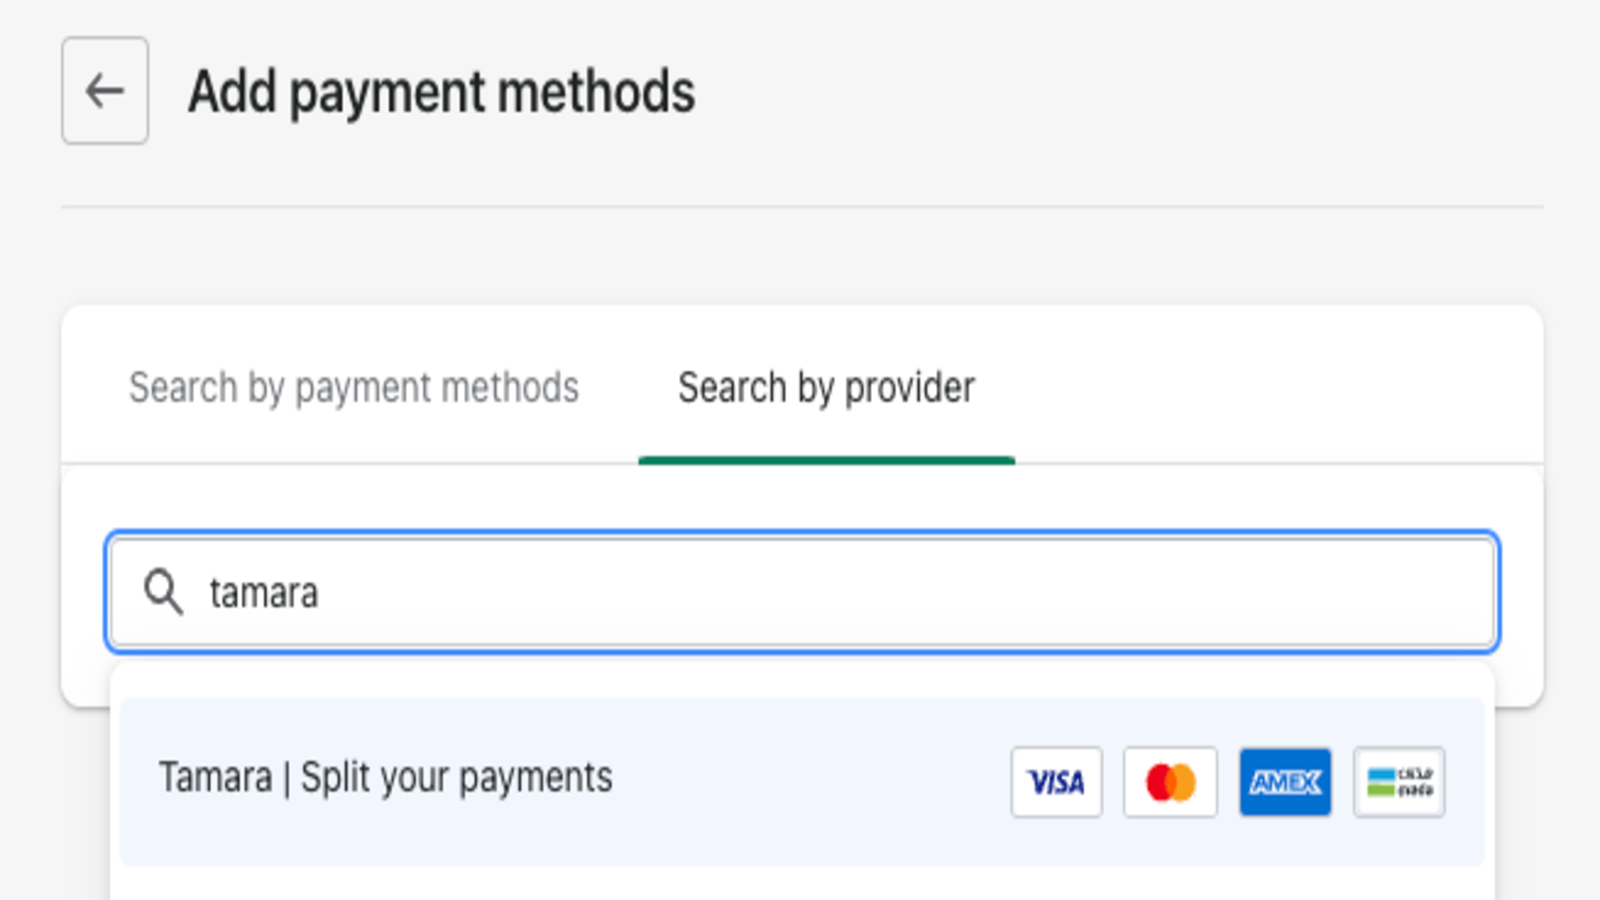 Añade la aplicación de pago de Shopify, busca Tamara Divide tus pagos